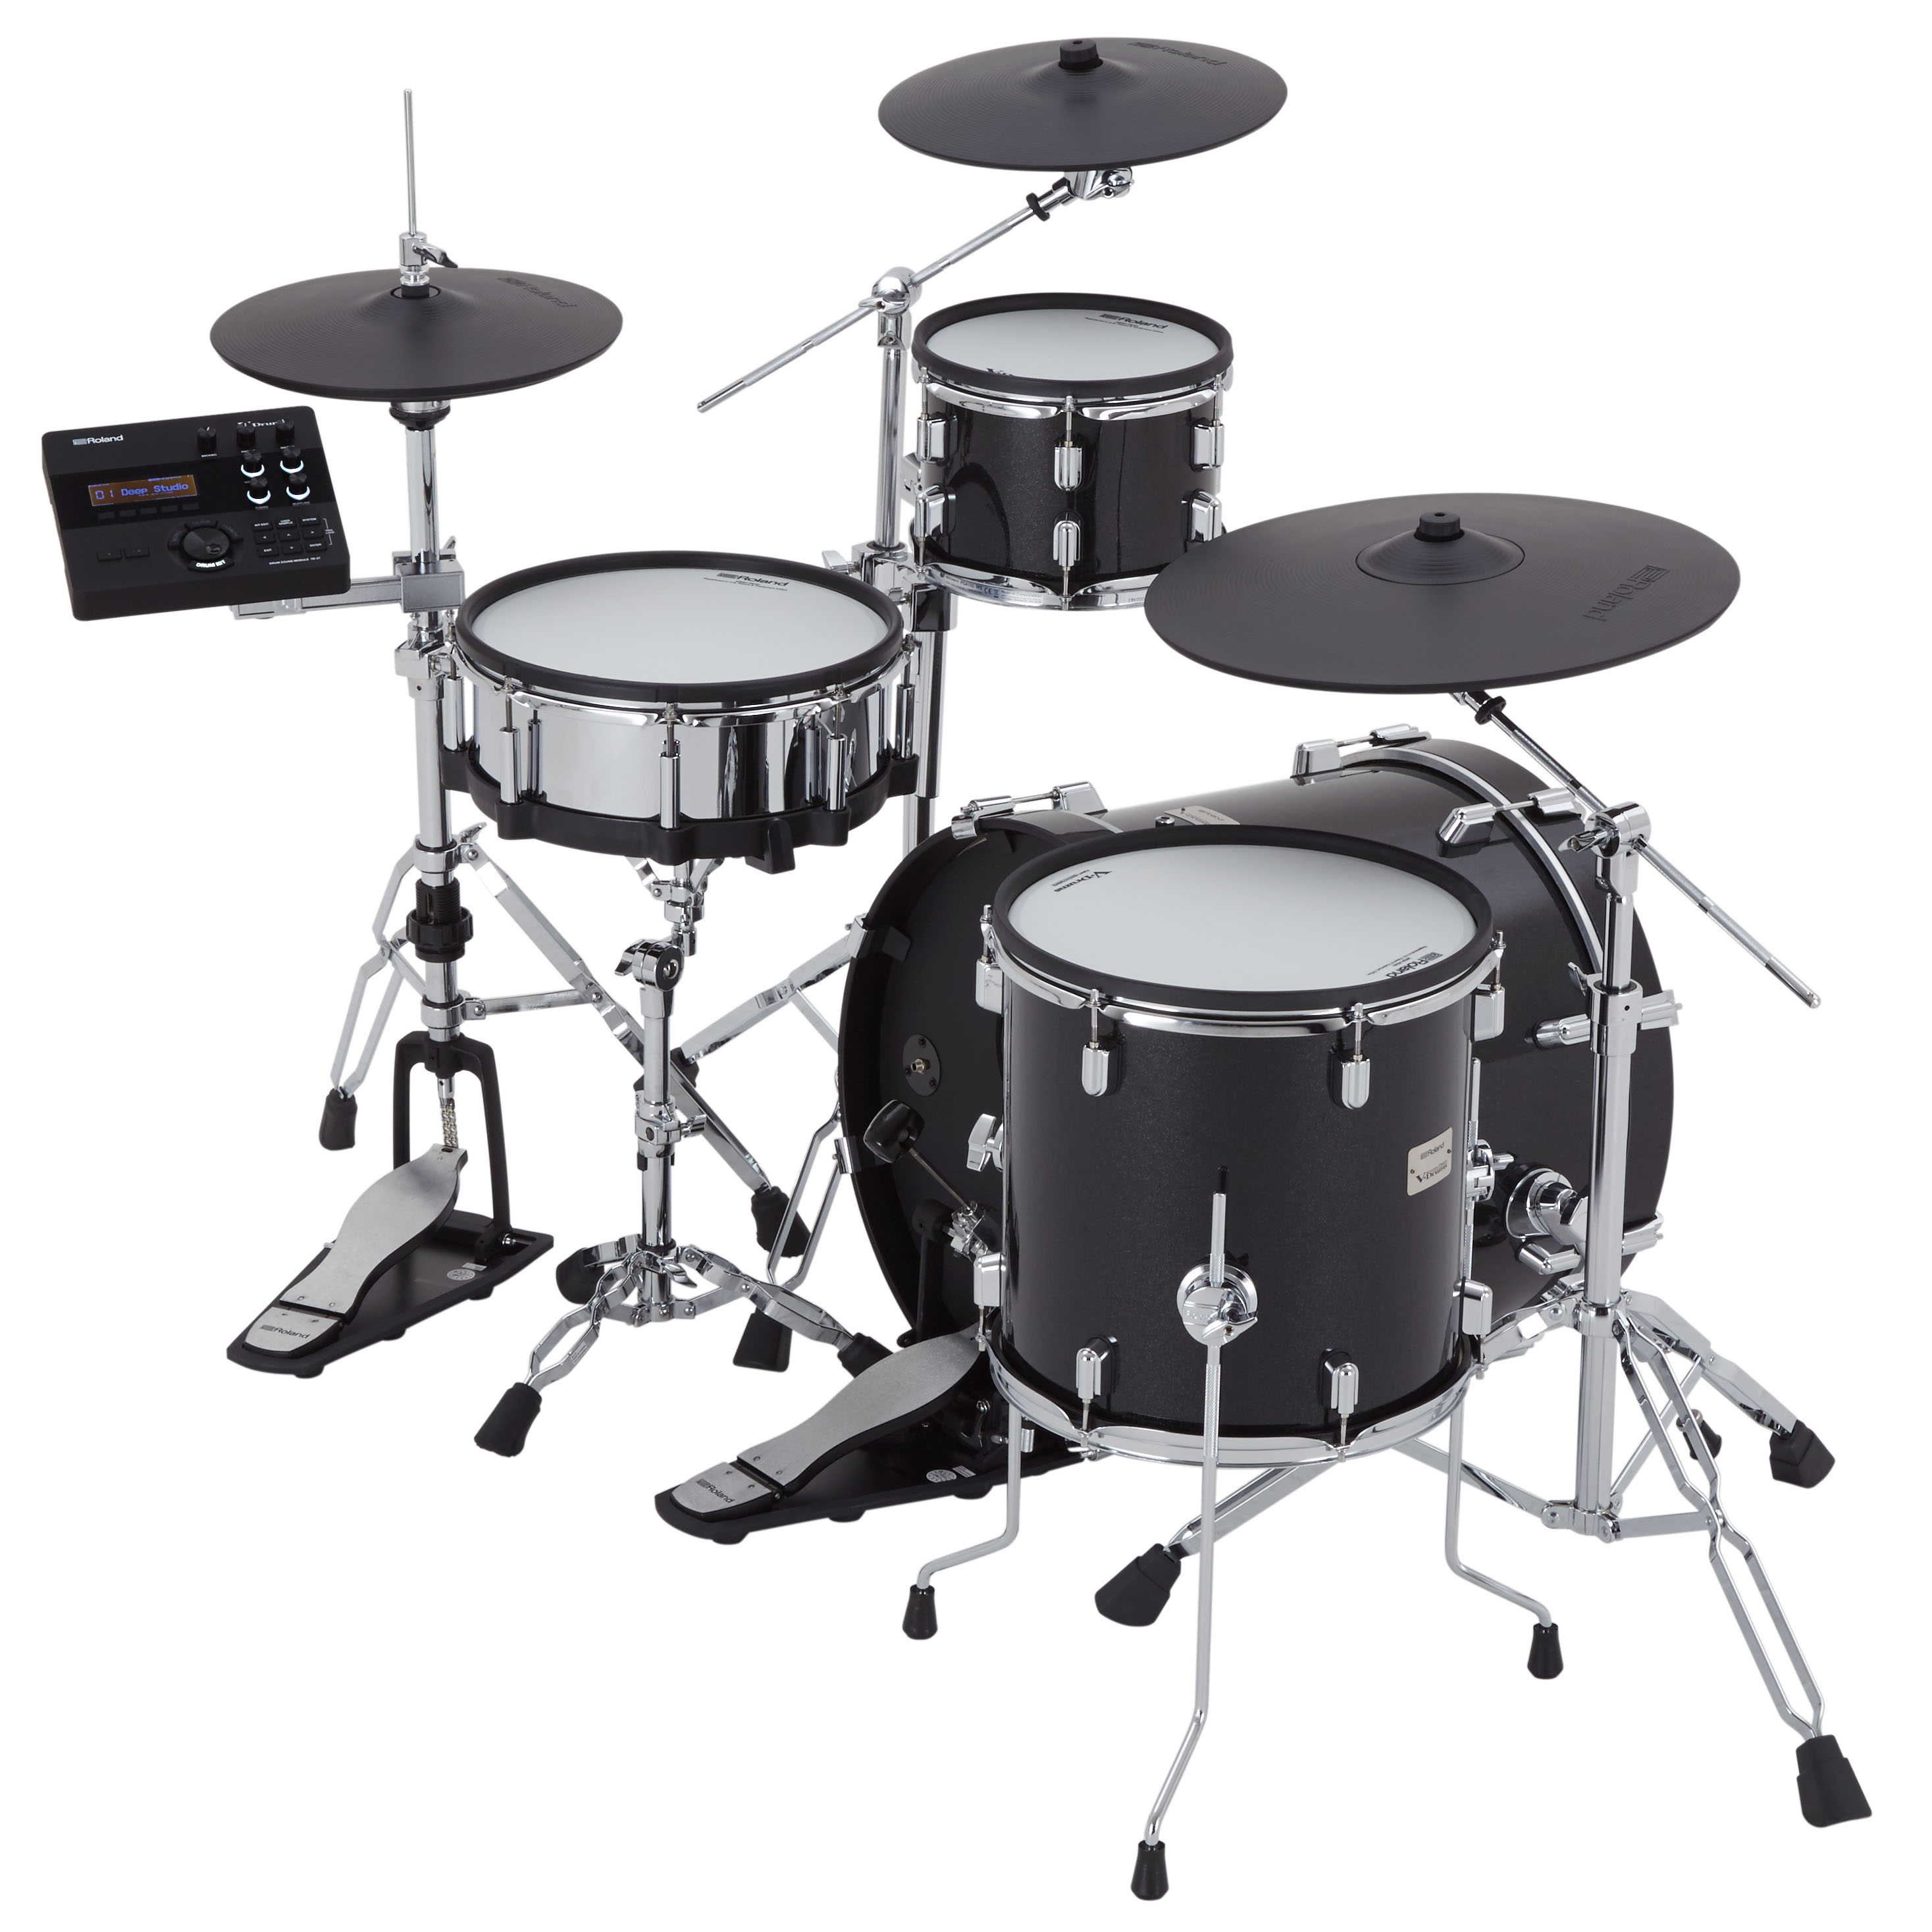 Roland Vad 504 V-drums Acoustic Design 5 Futs - Batería electrónica completa - Variation 2